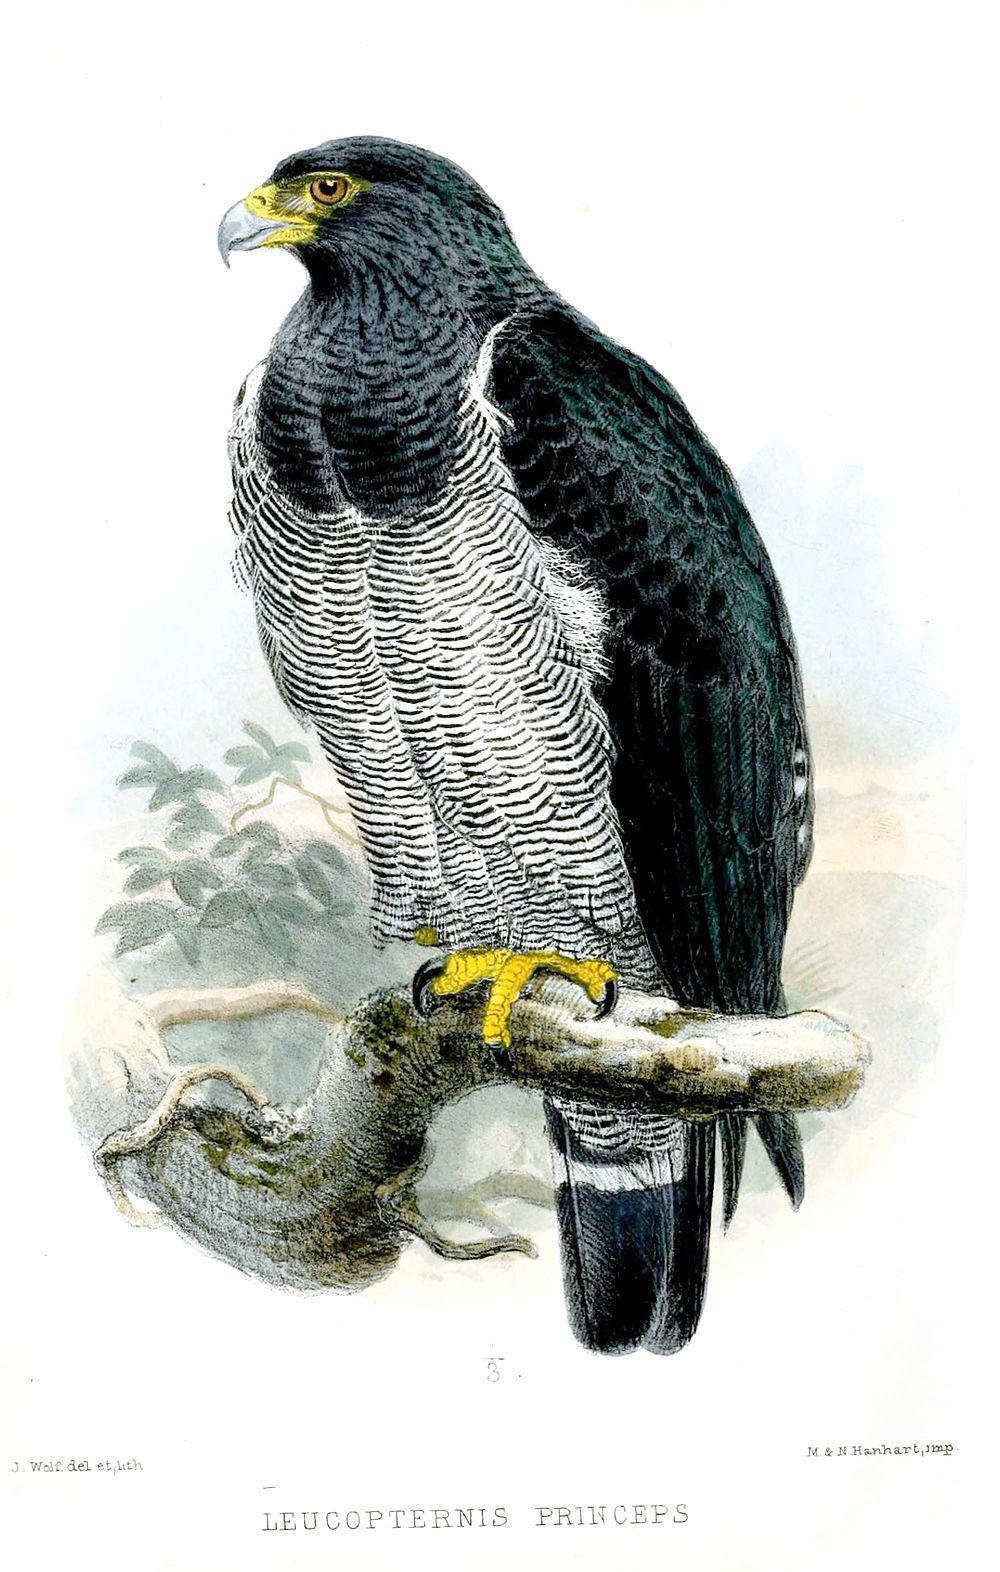 横斑南美鵟 / Barred Hawk / Morphnarchus princeps